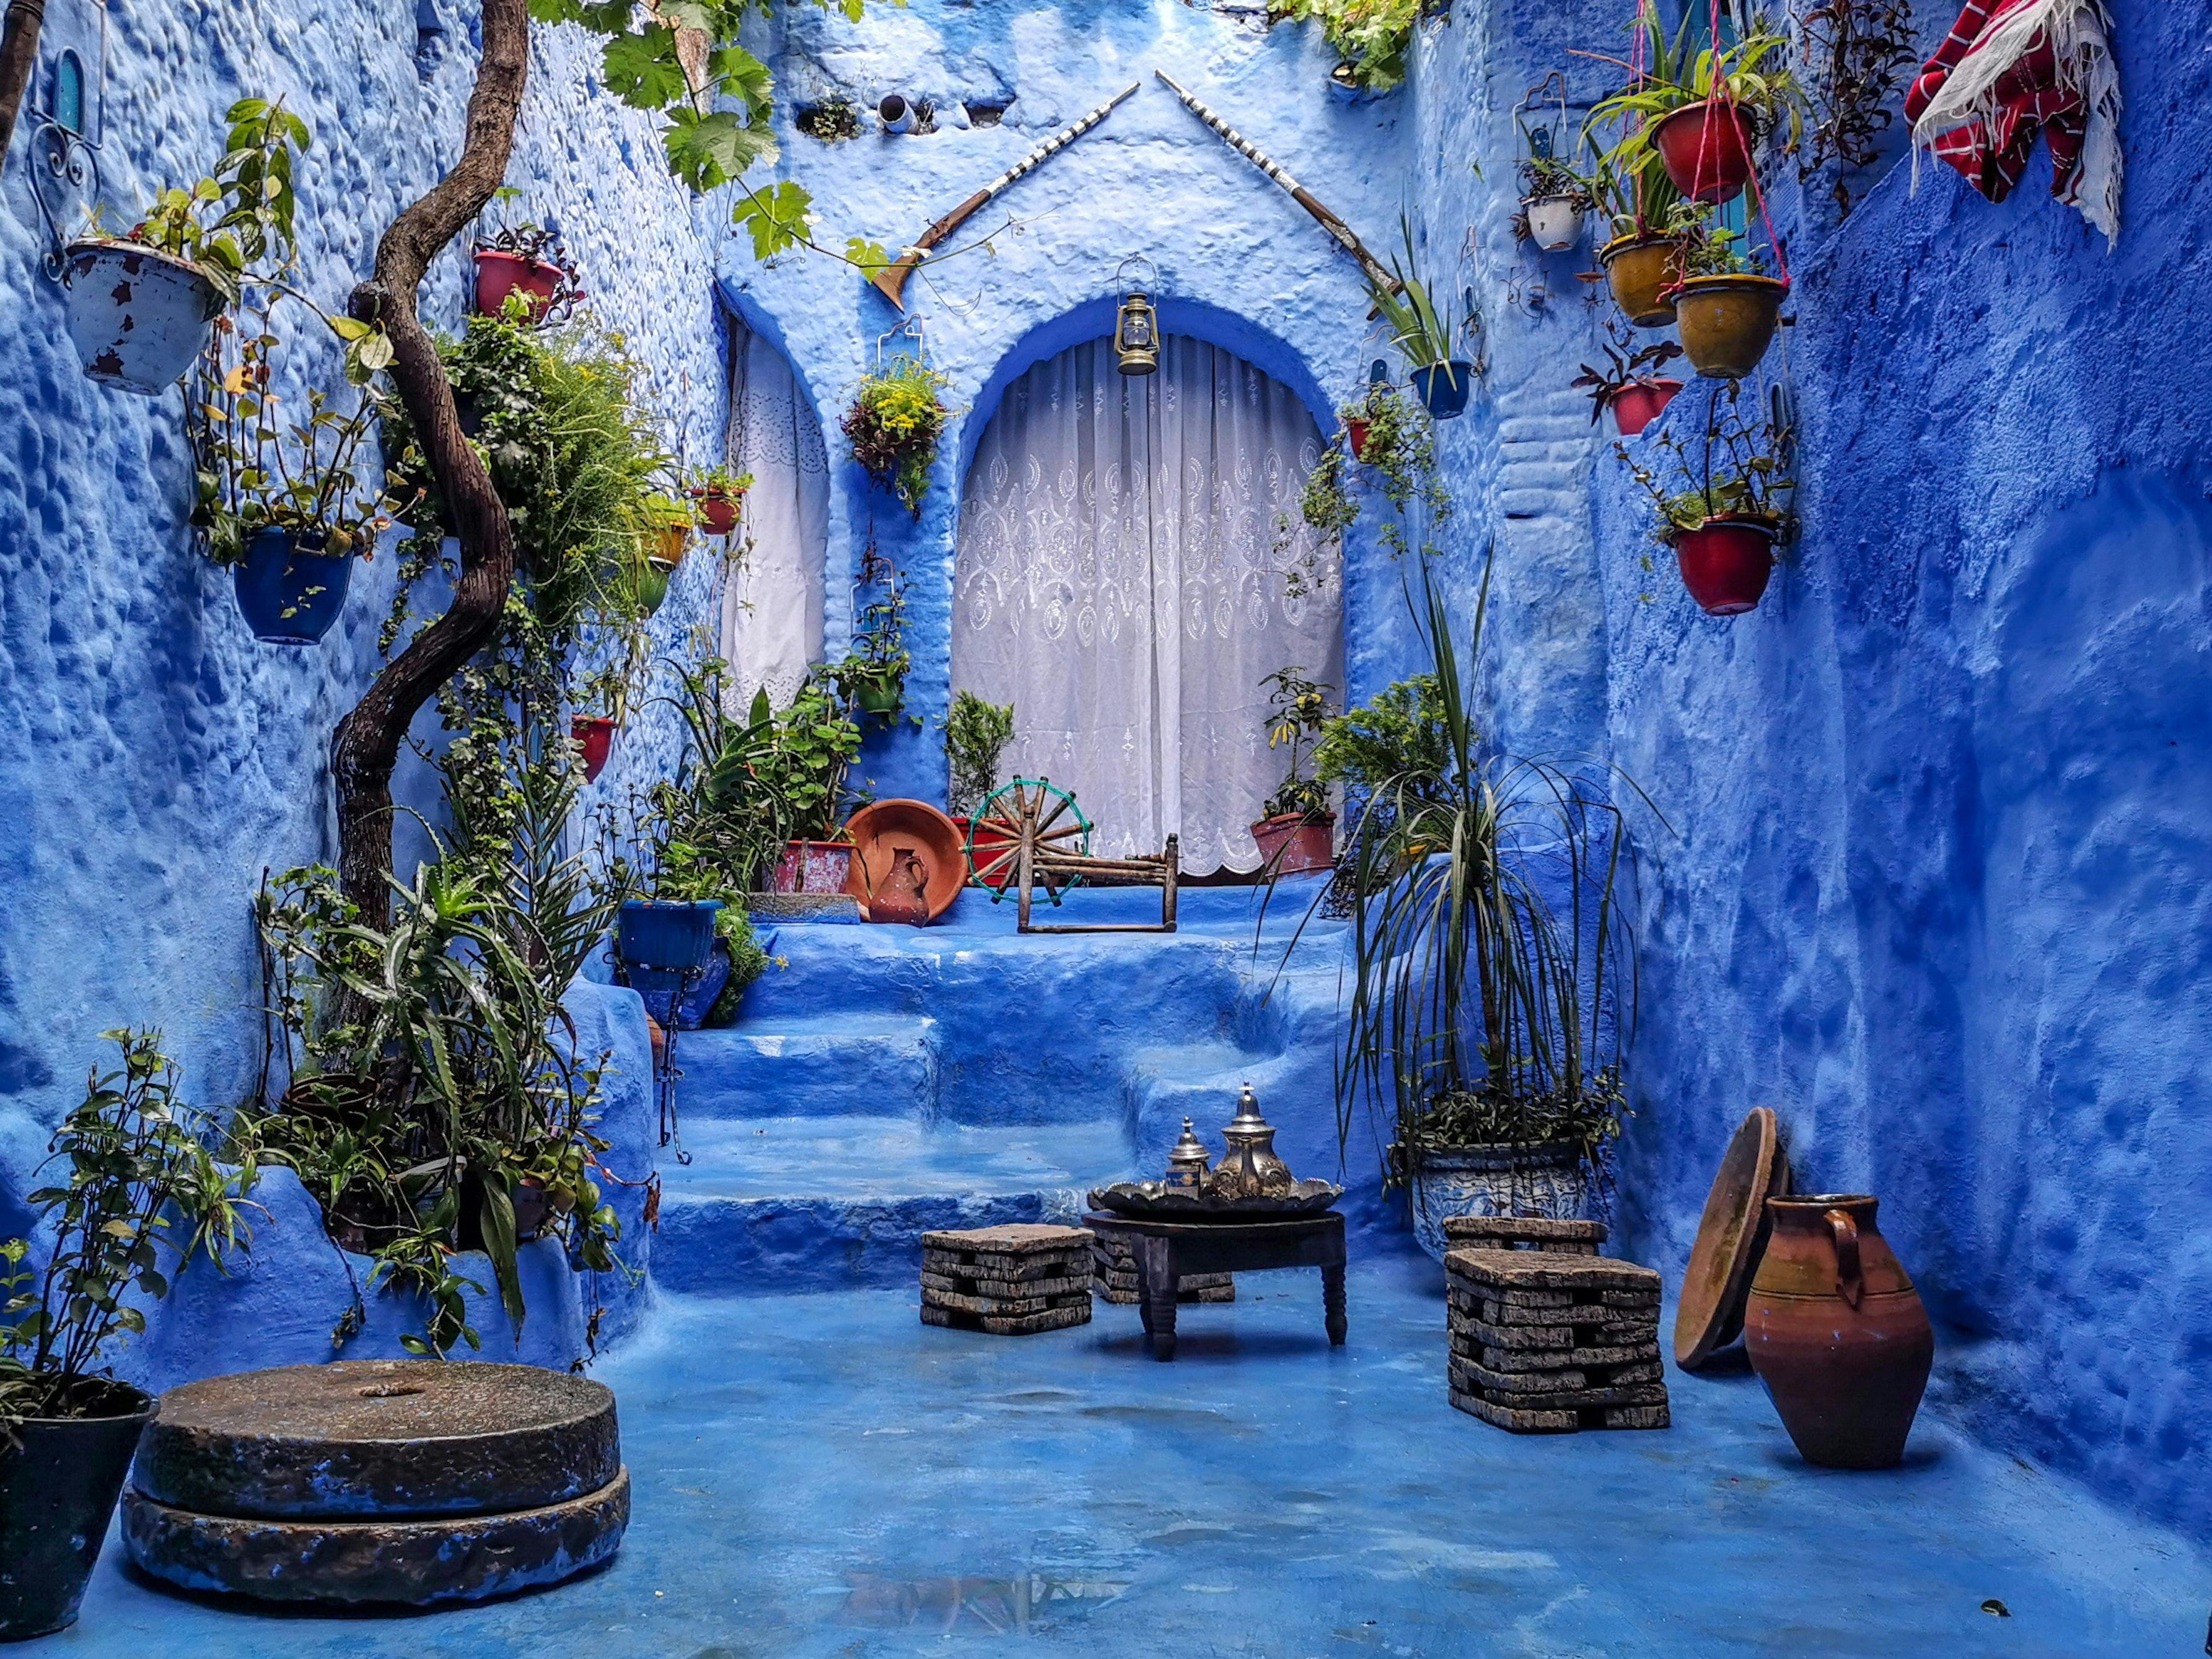 
Beautiful blue Rue Bin Souaki in Chefchaouen, Morocco.